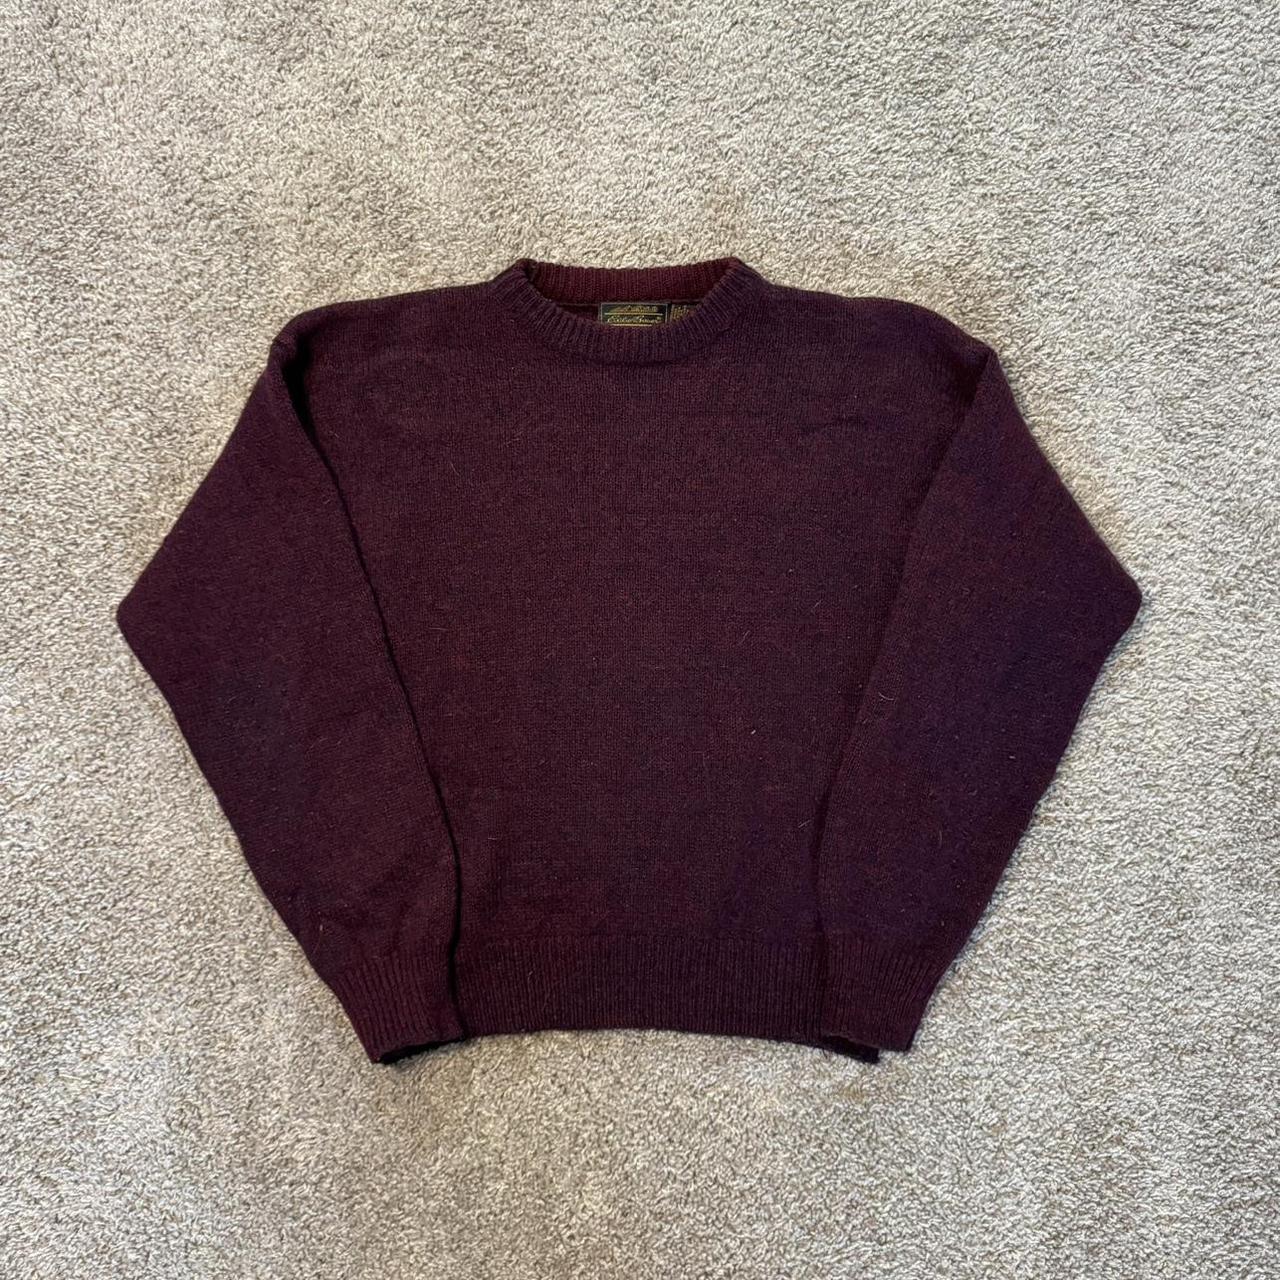 Vintage Eddie Bauer wool sweater Great... - Depop